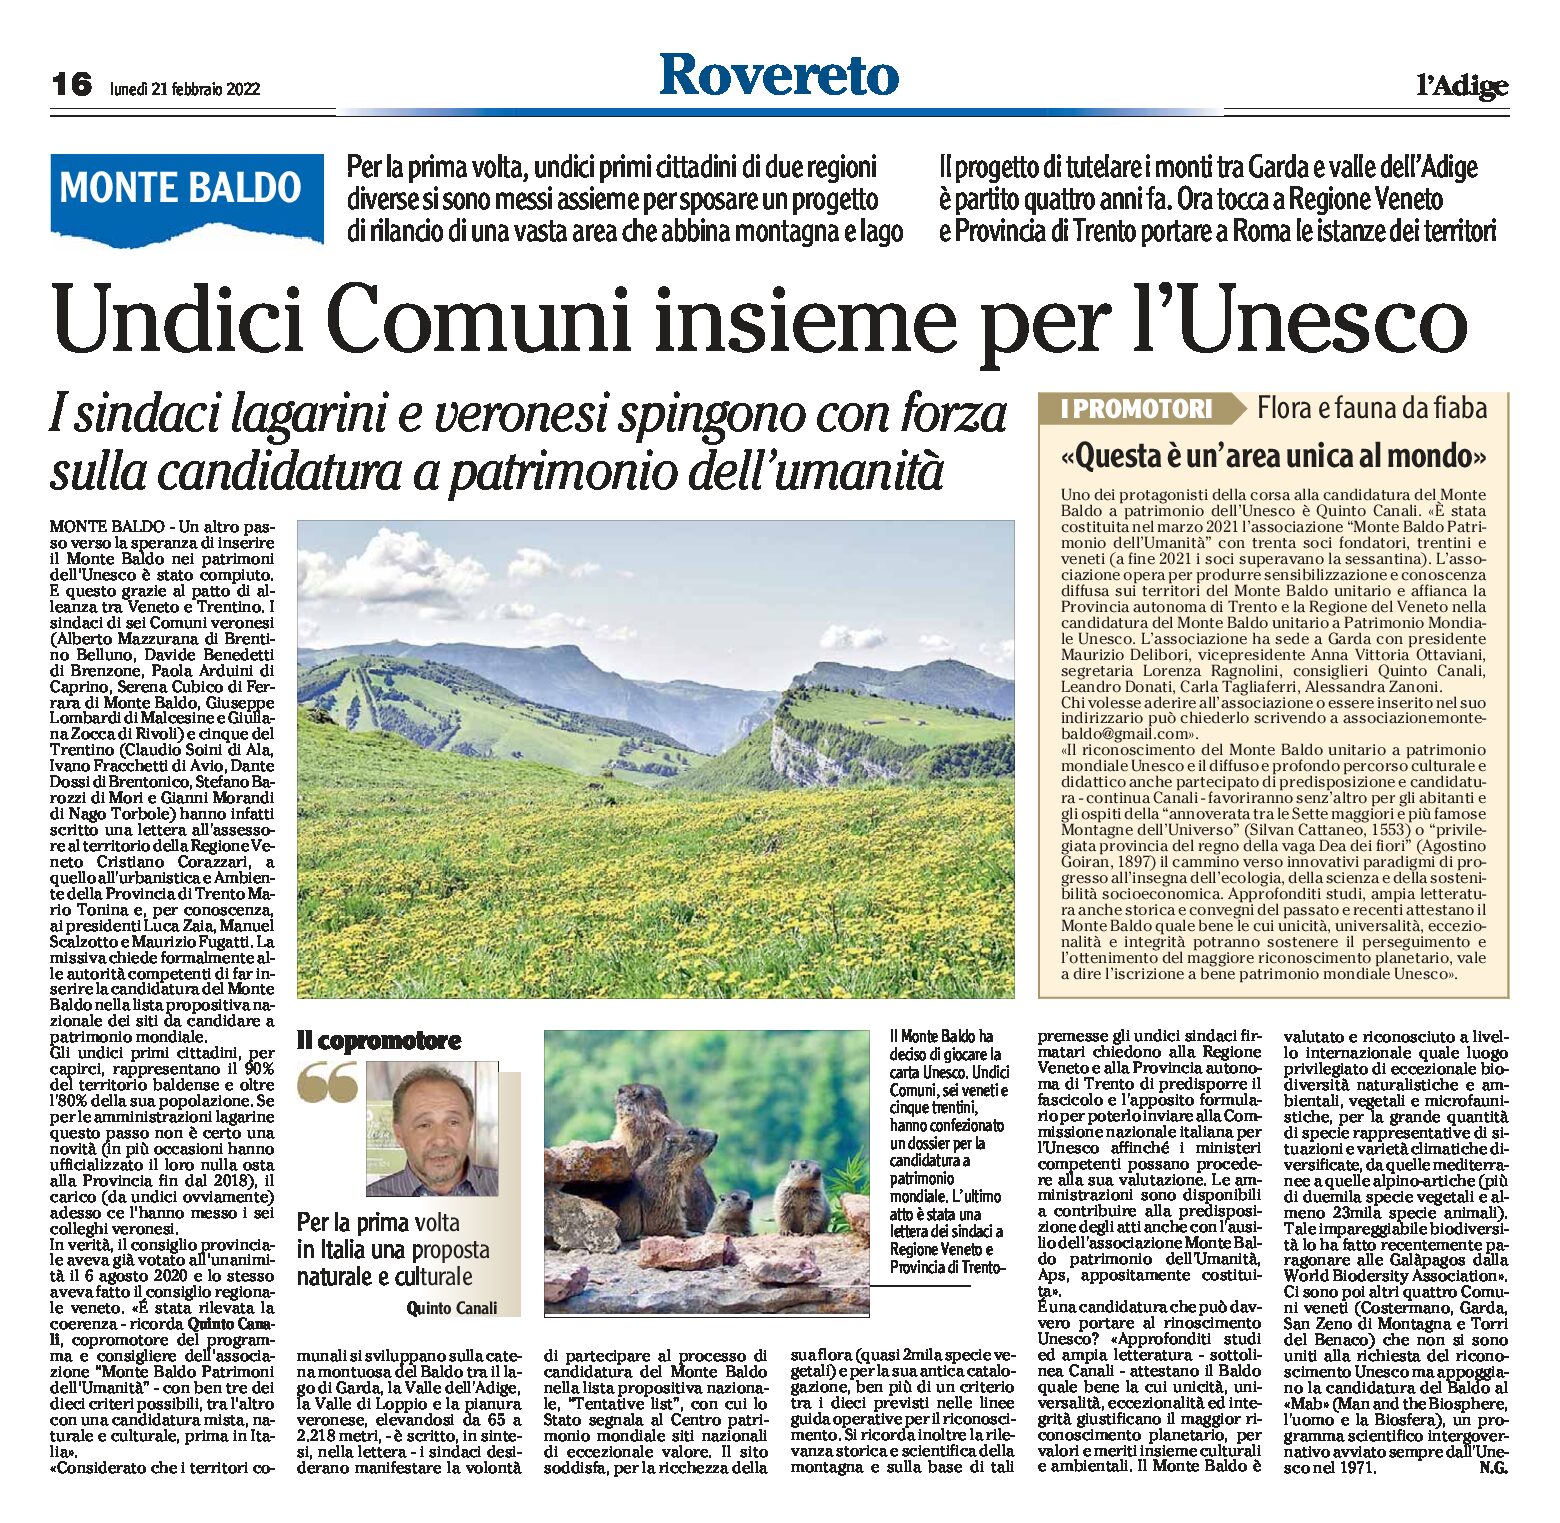 Monte Baldo: undici Comuni insieme per l’Unesco